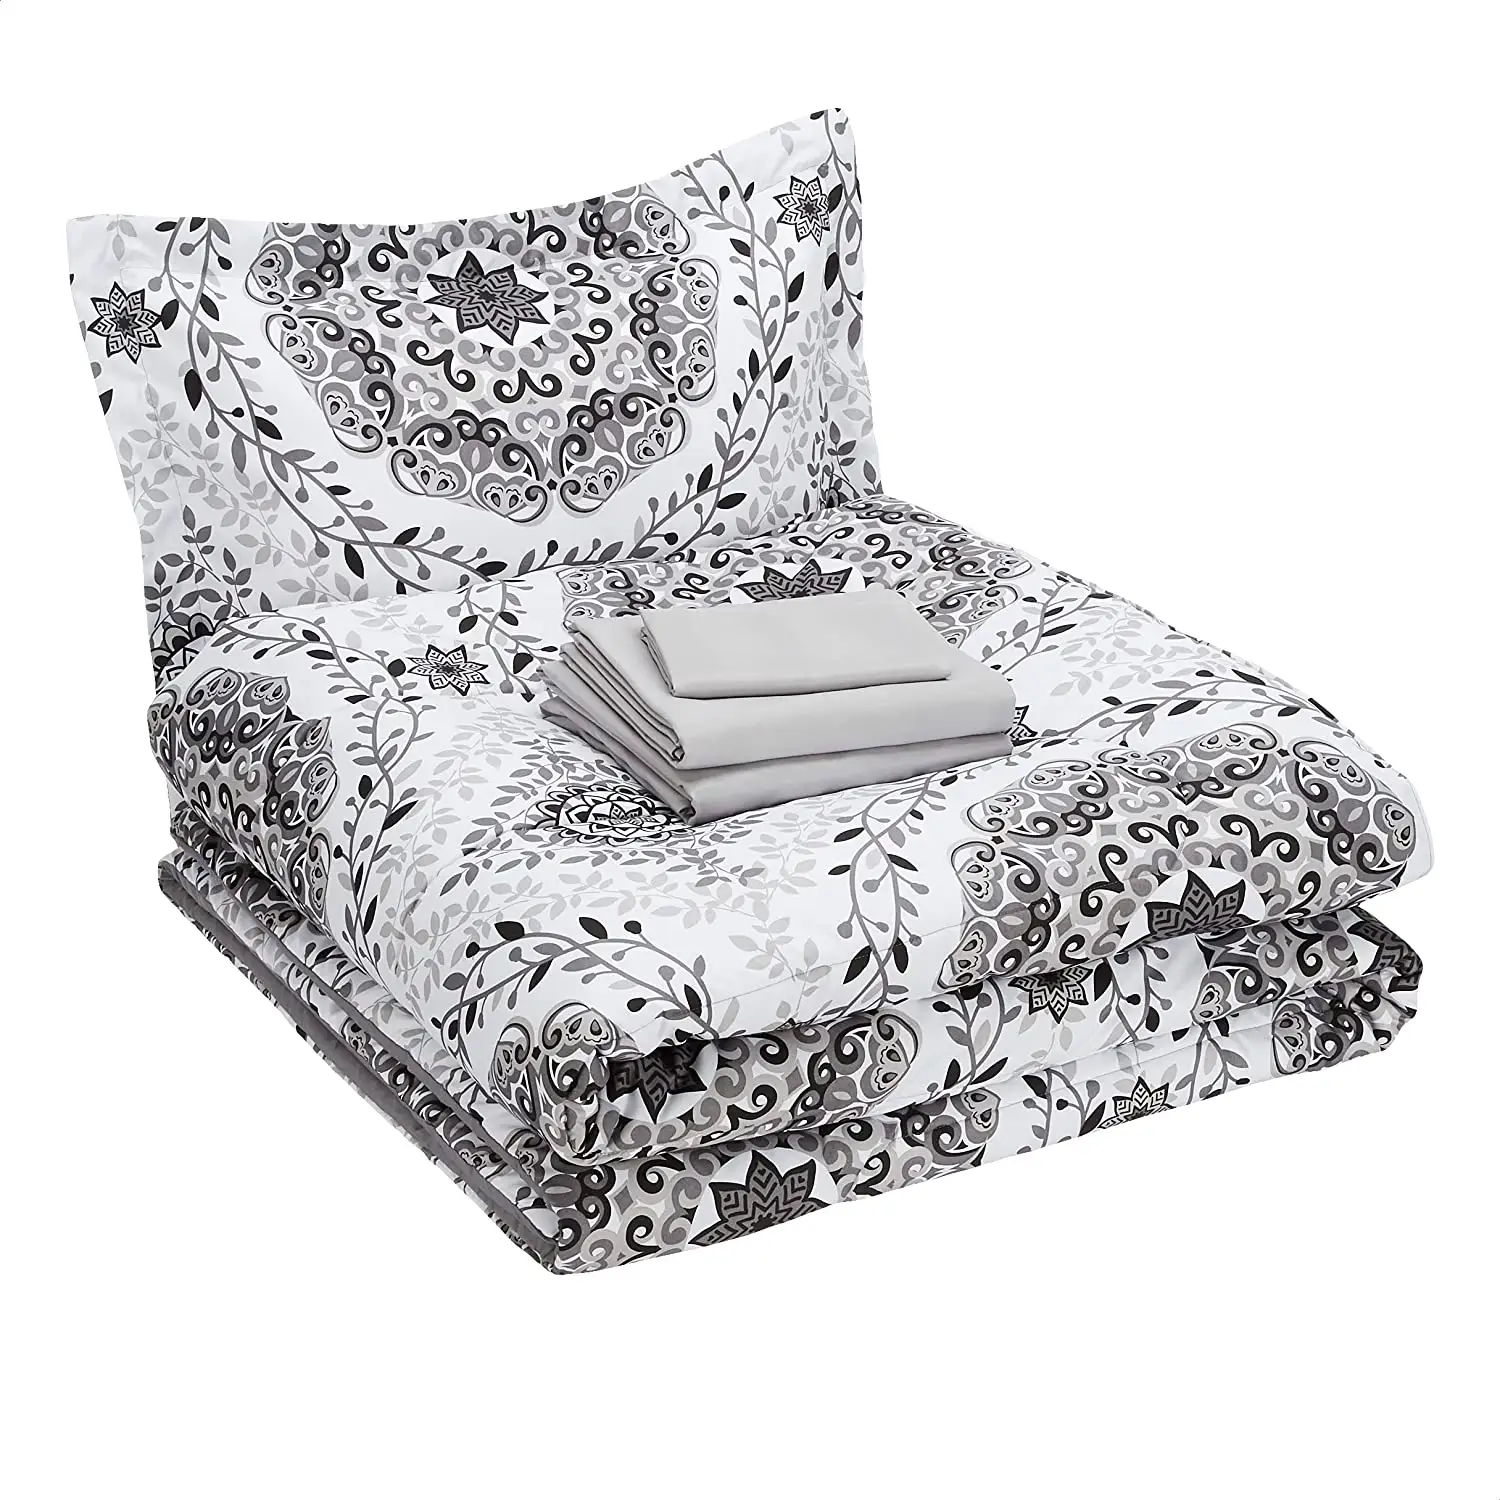 Juego de cama completo con estampado de flores geométricas, edredón de lujo de alta calidad